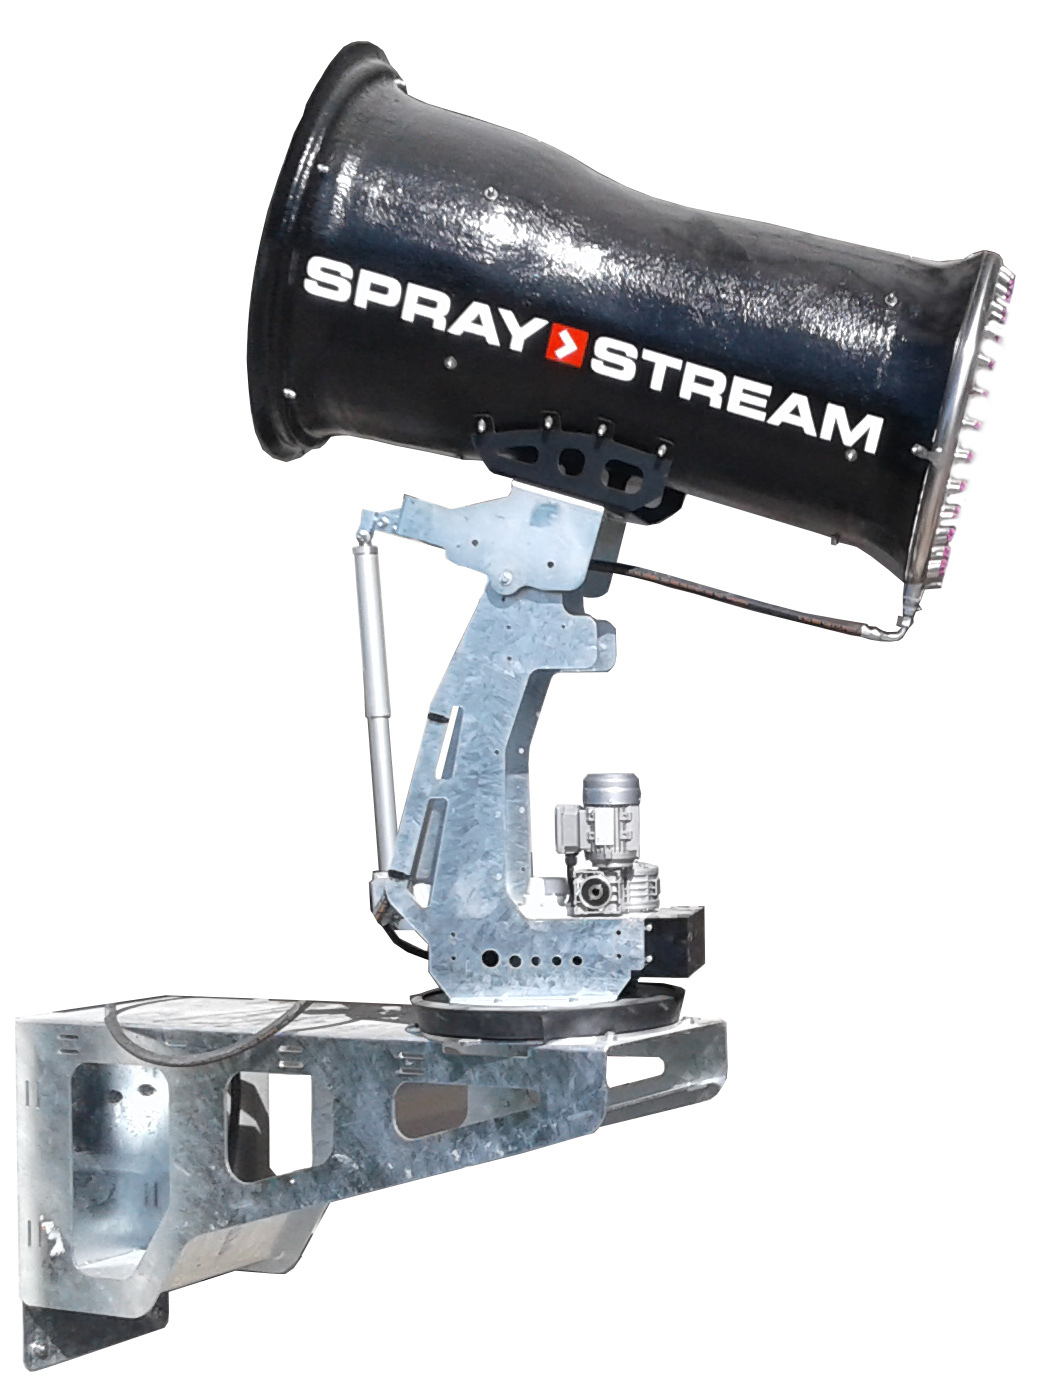 Spraystream Wallmount version